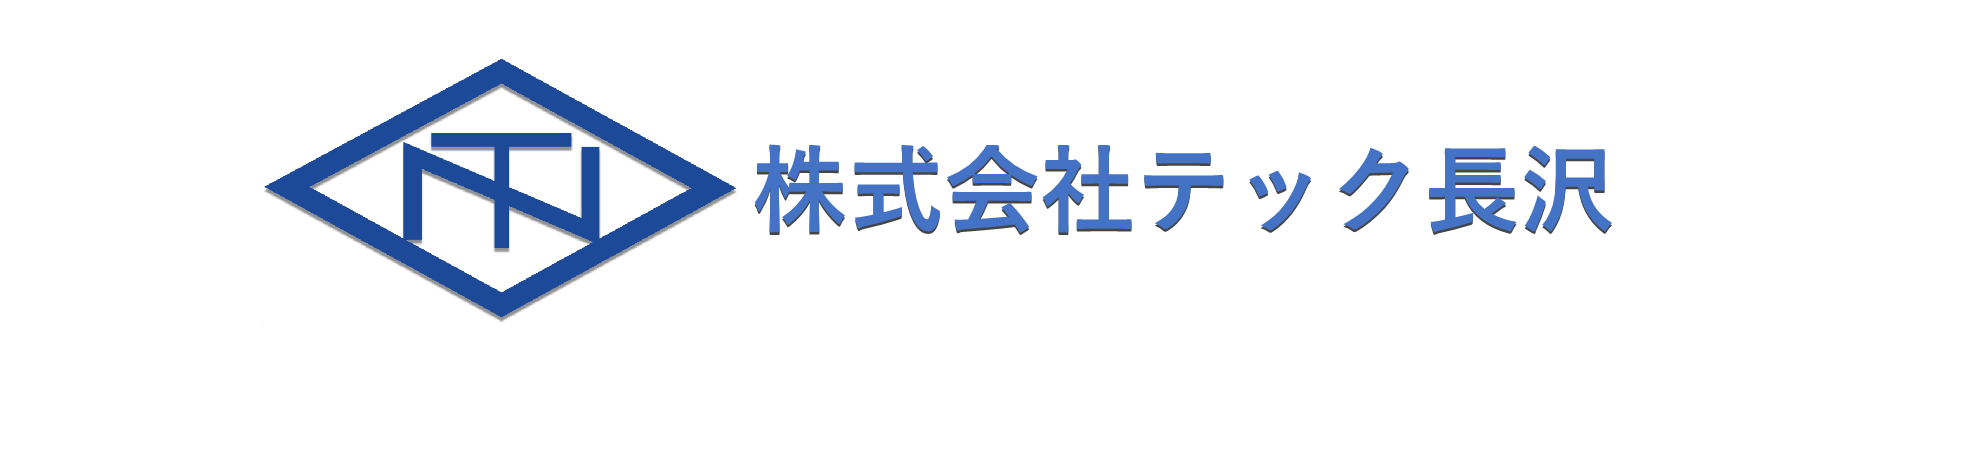 ロゴ：株式会社テック長沢様